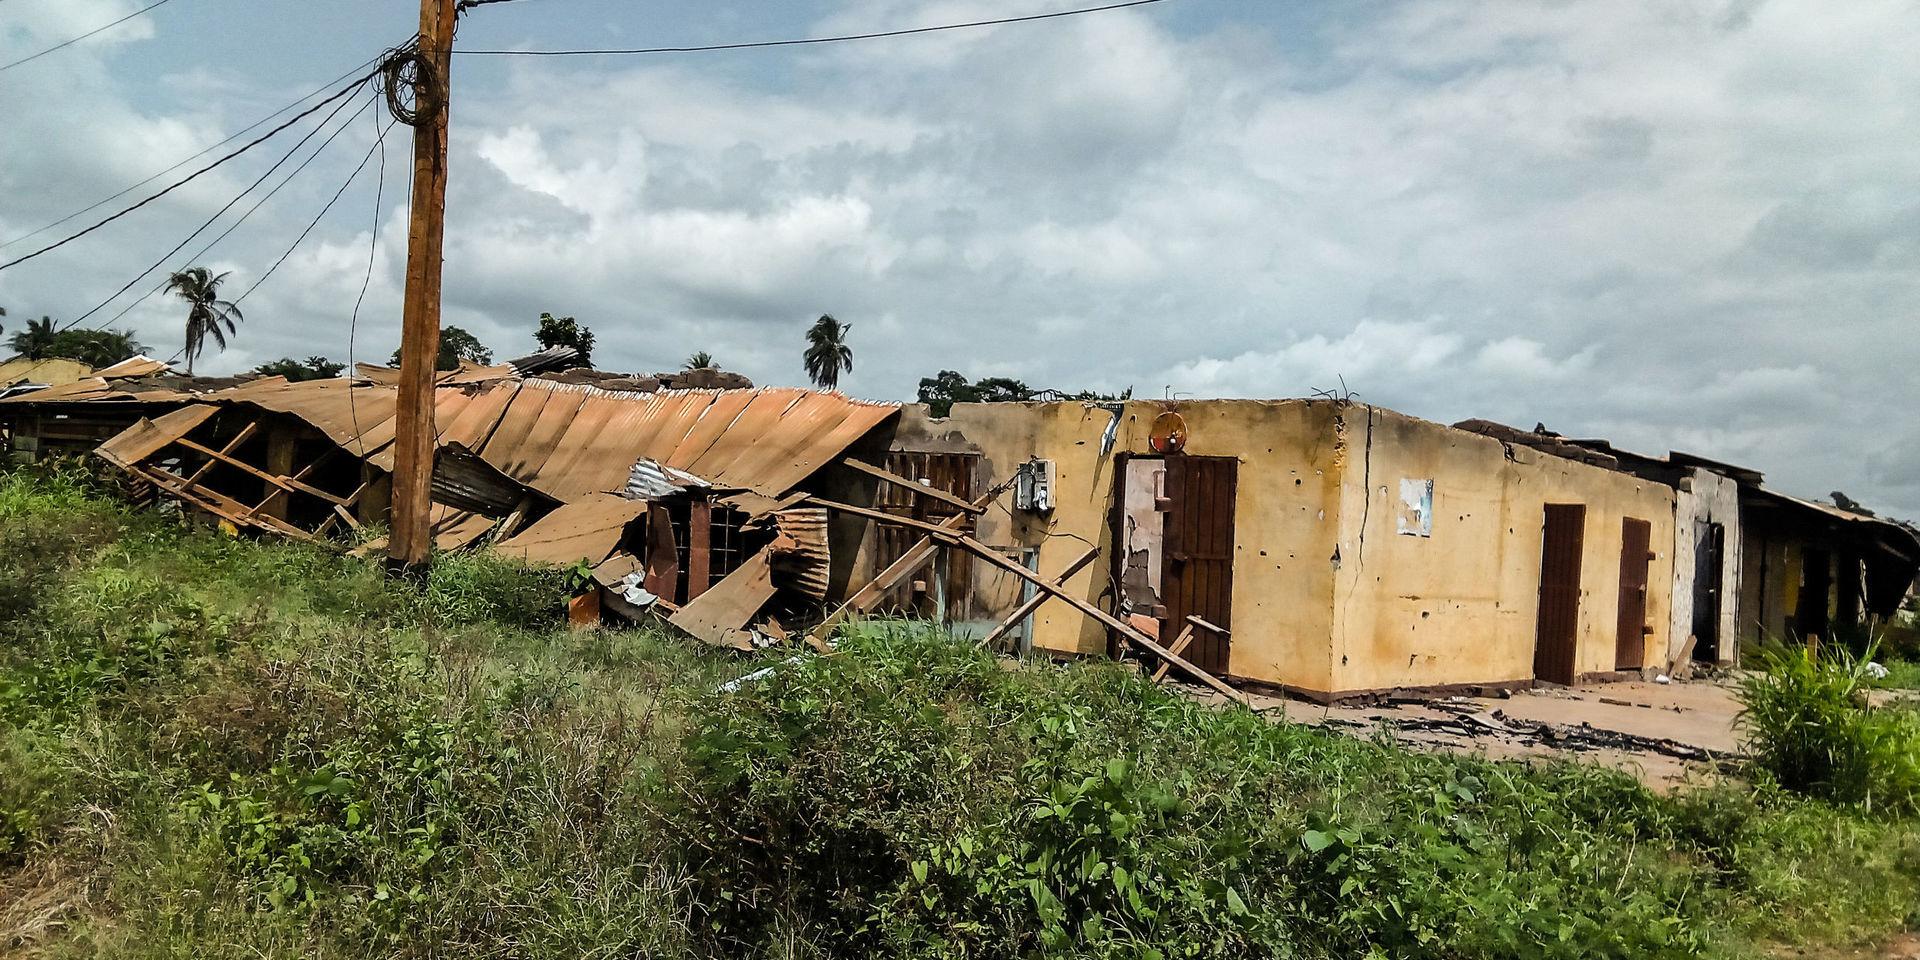 Hus brända av den kamerunska armén i byn Kwaka där beväpnade separatister misstänktes gömma sig.